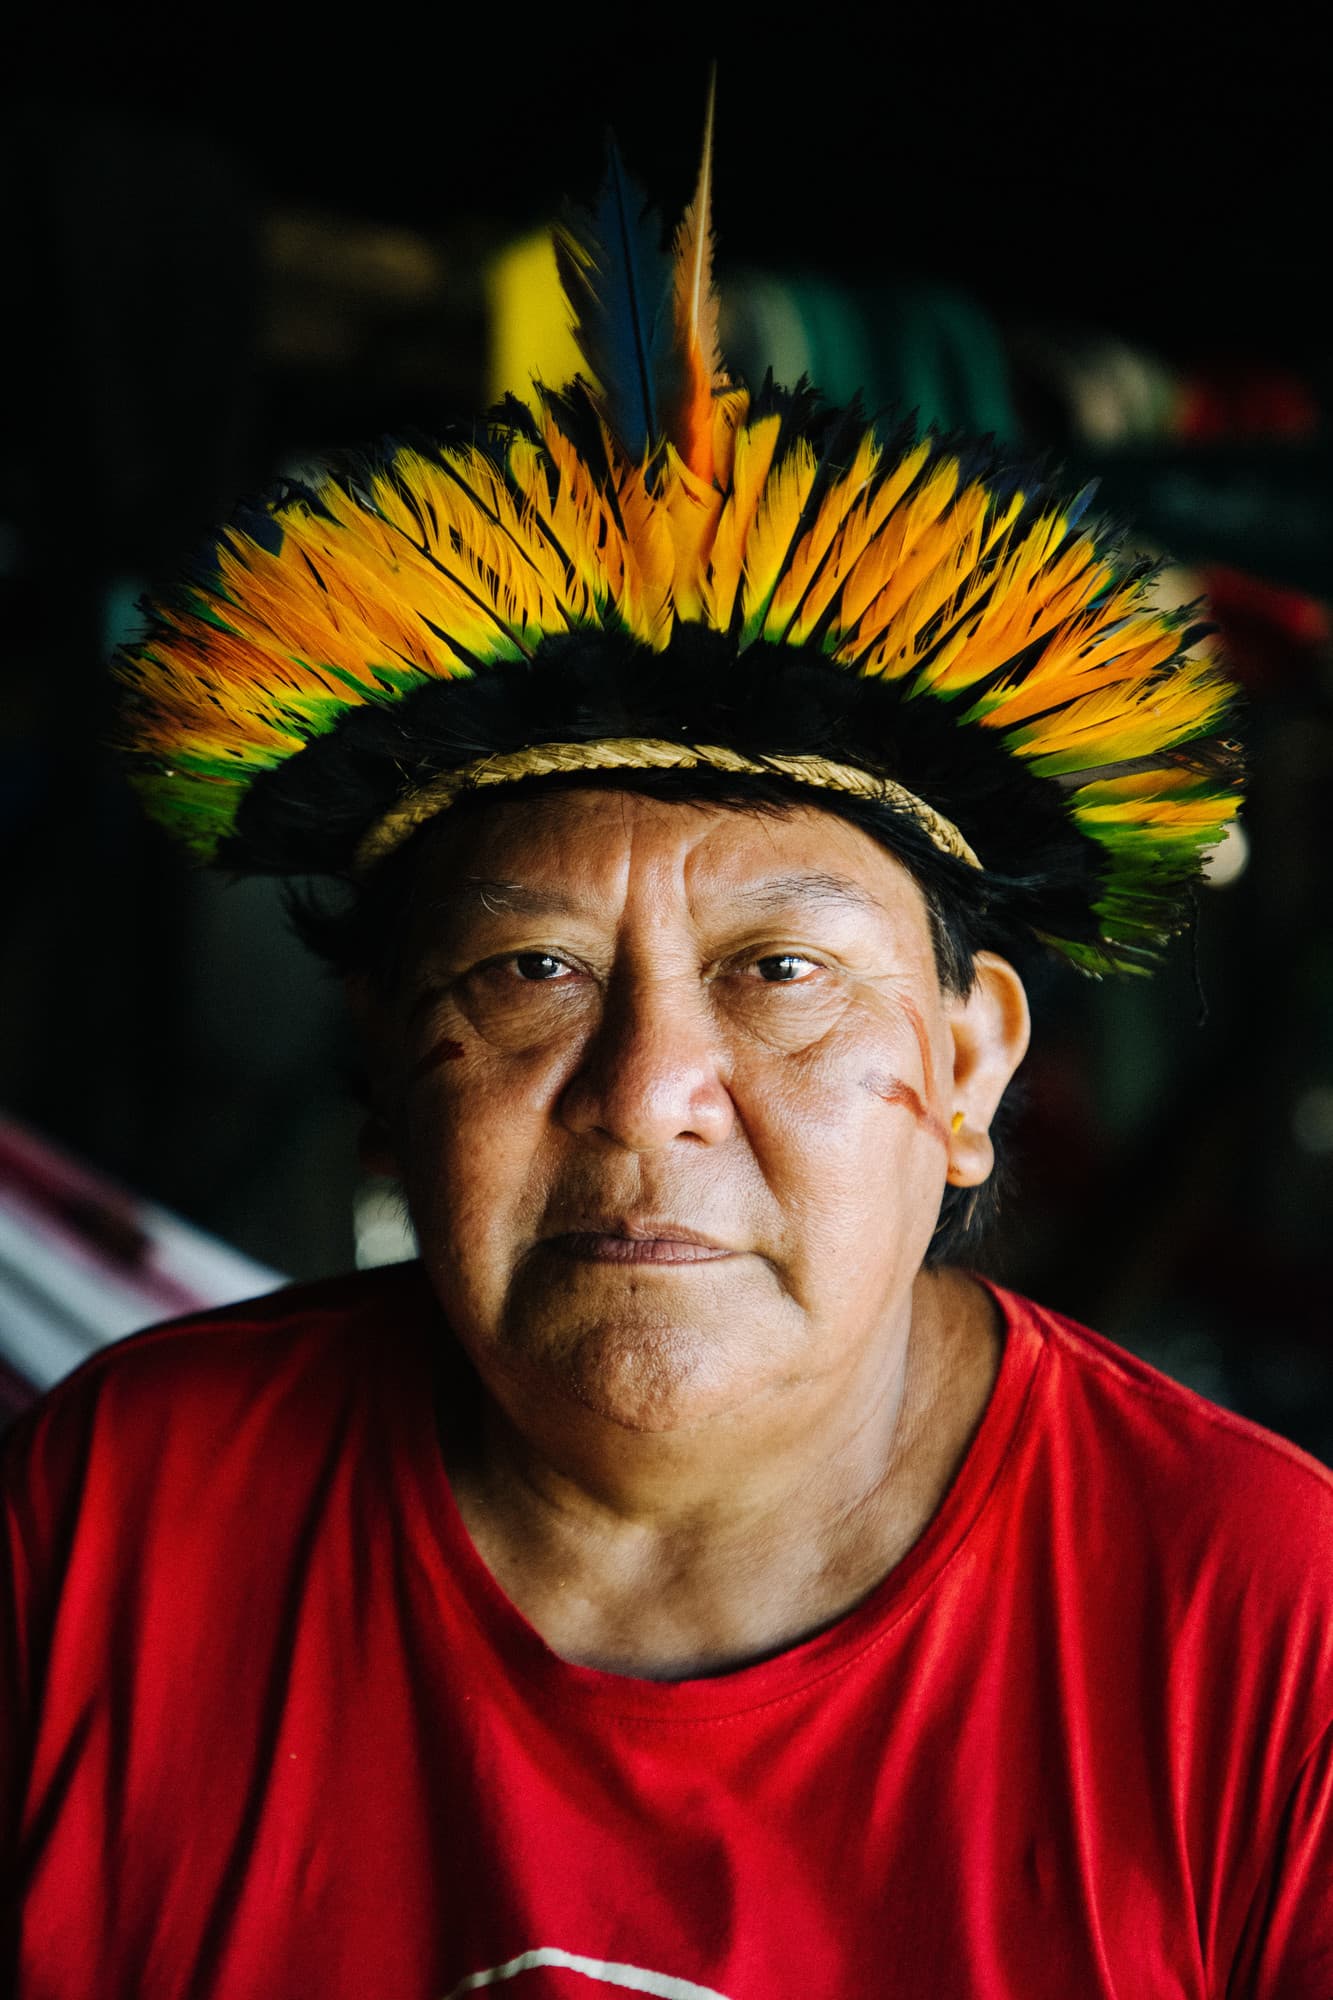 지난 수년간 불법 채굴의 폐해를 고발해온 원주민 지도자 다비 코페나와. "불법 채굴로 우리 집, 우리 고장은 지금도 상처를 받고 있다." / © Christian Braga / ISA